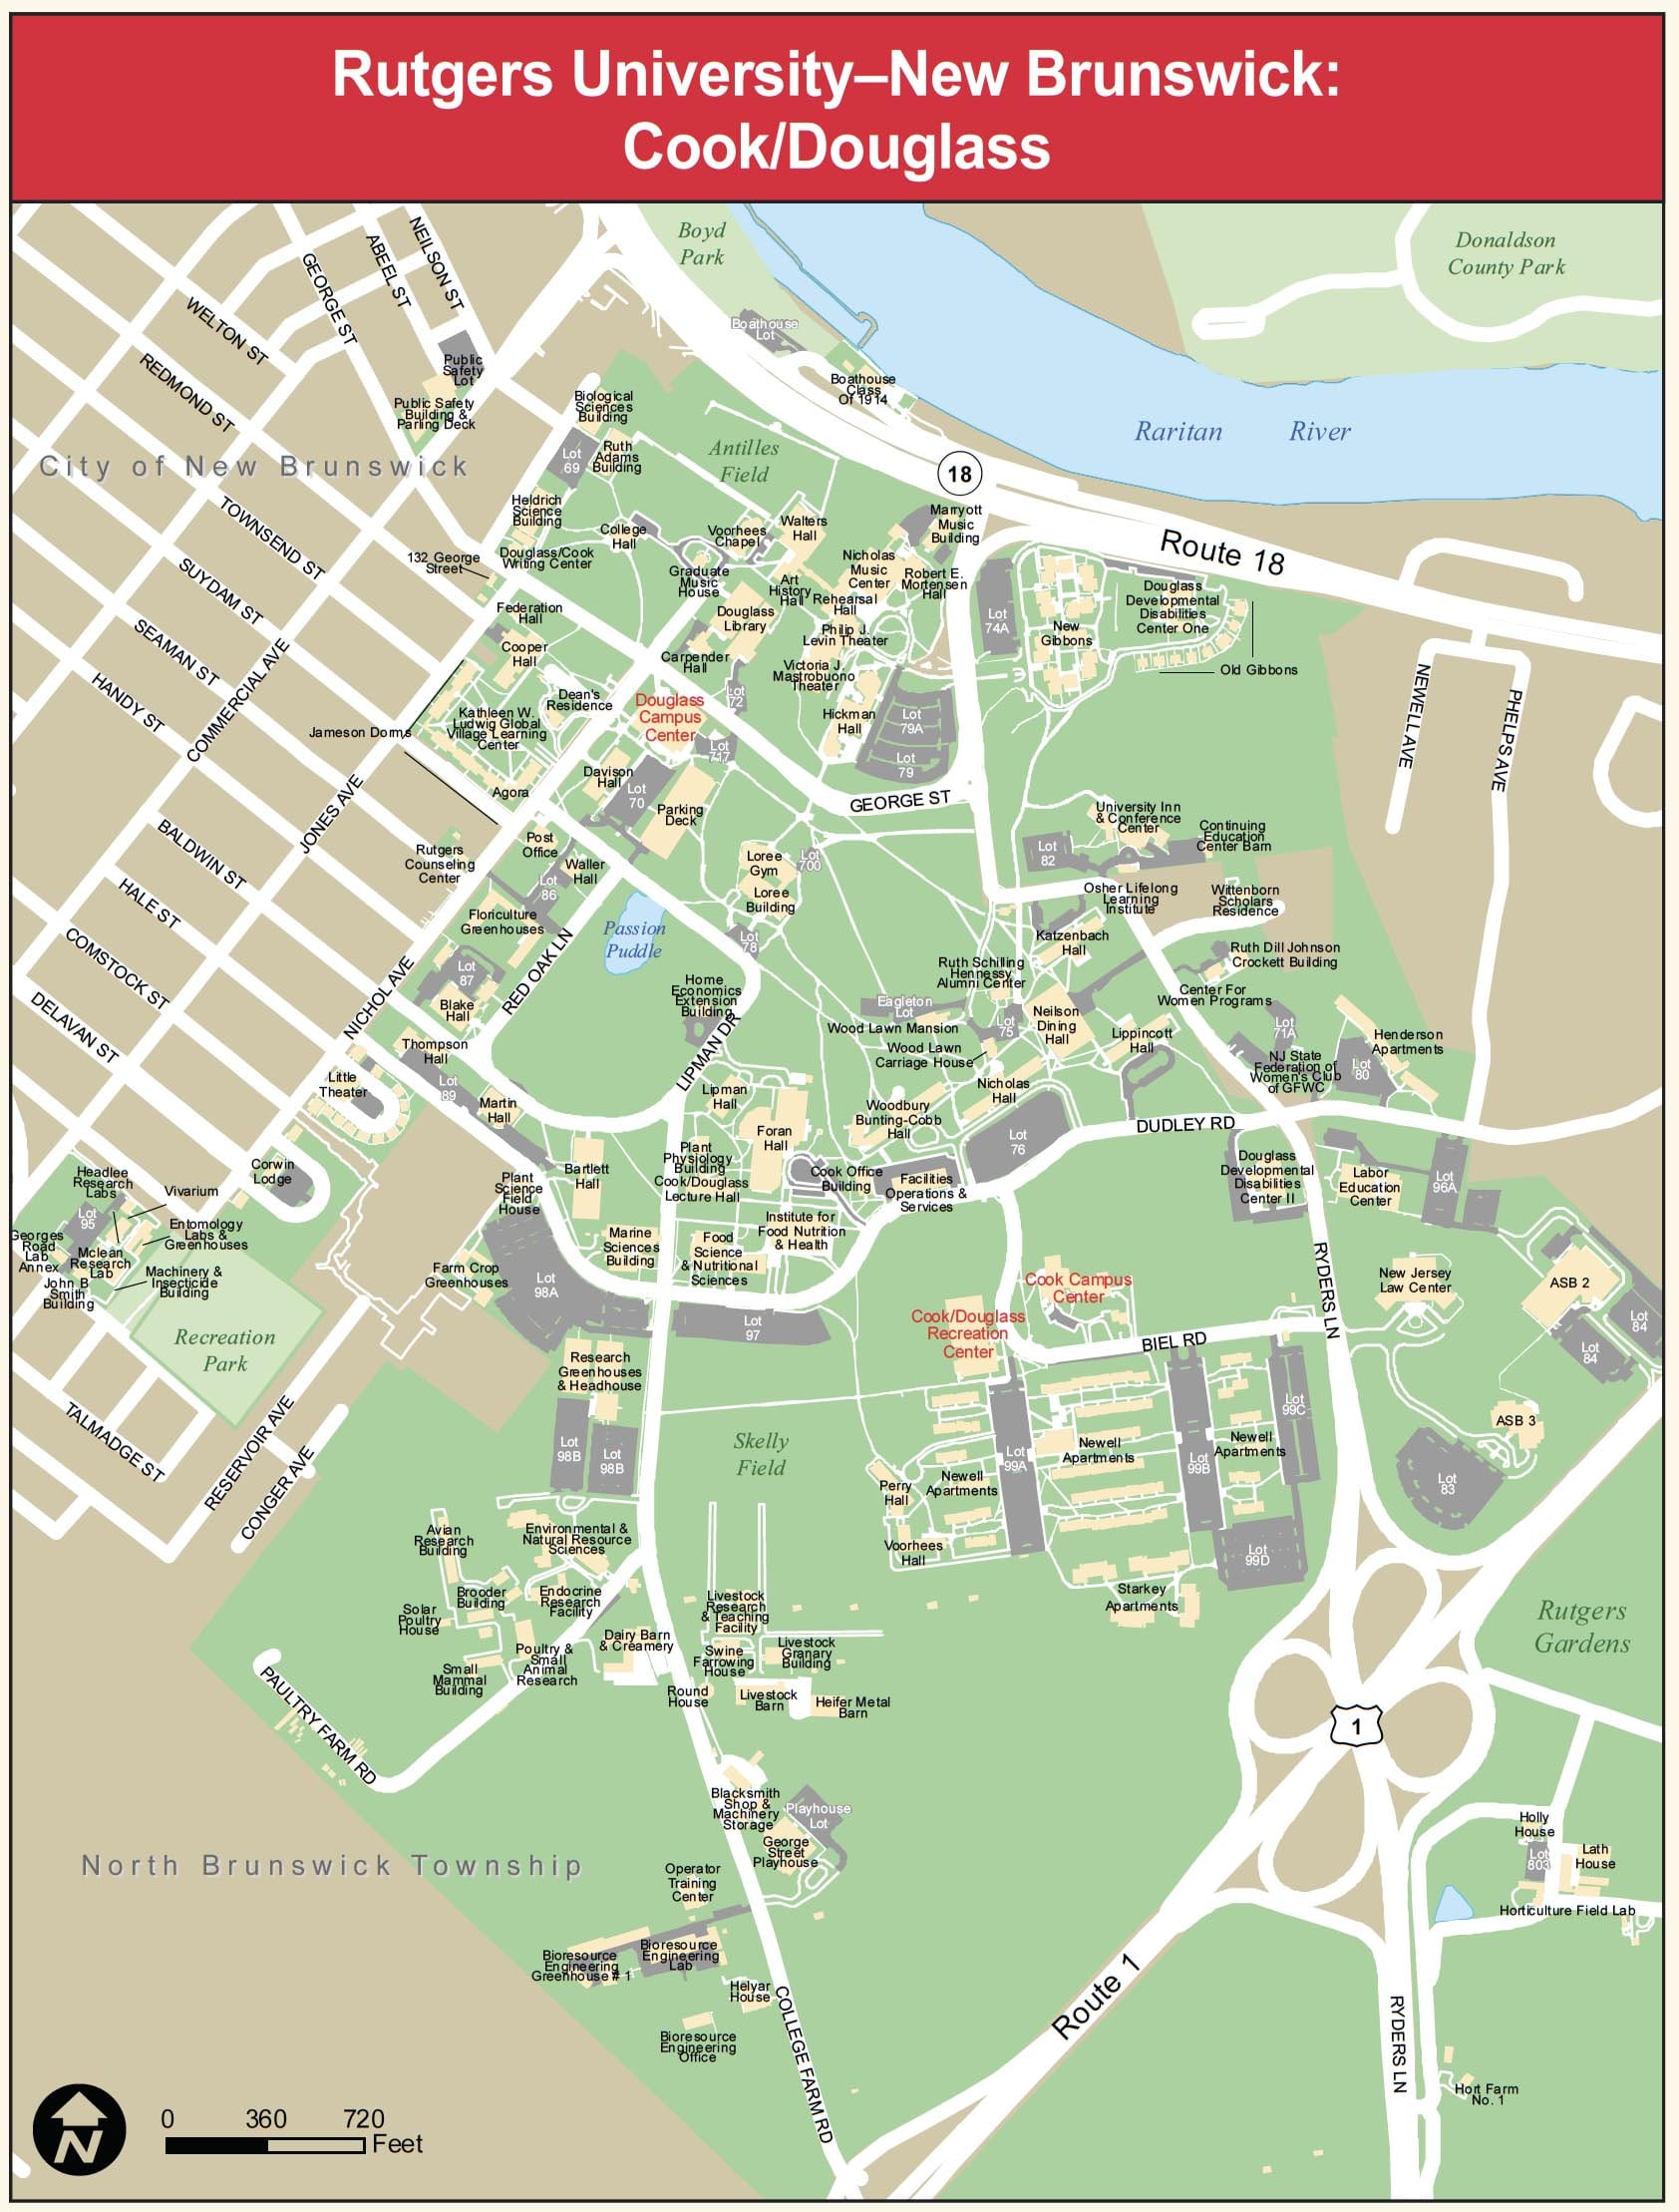 Cook/Douglass Campus Map